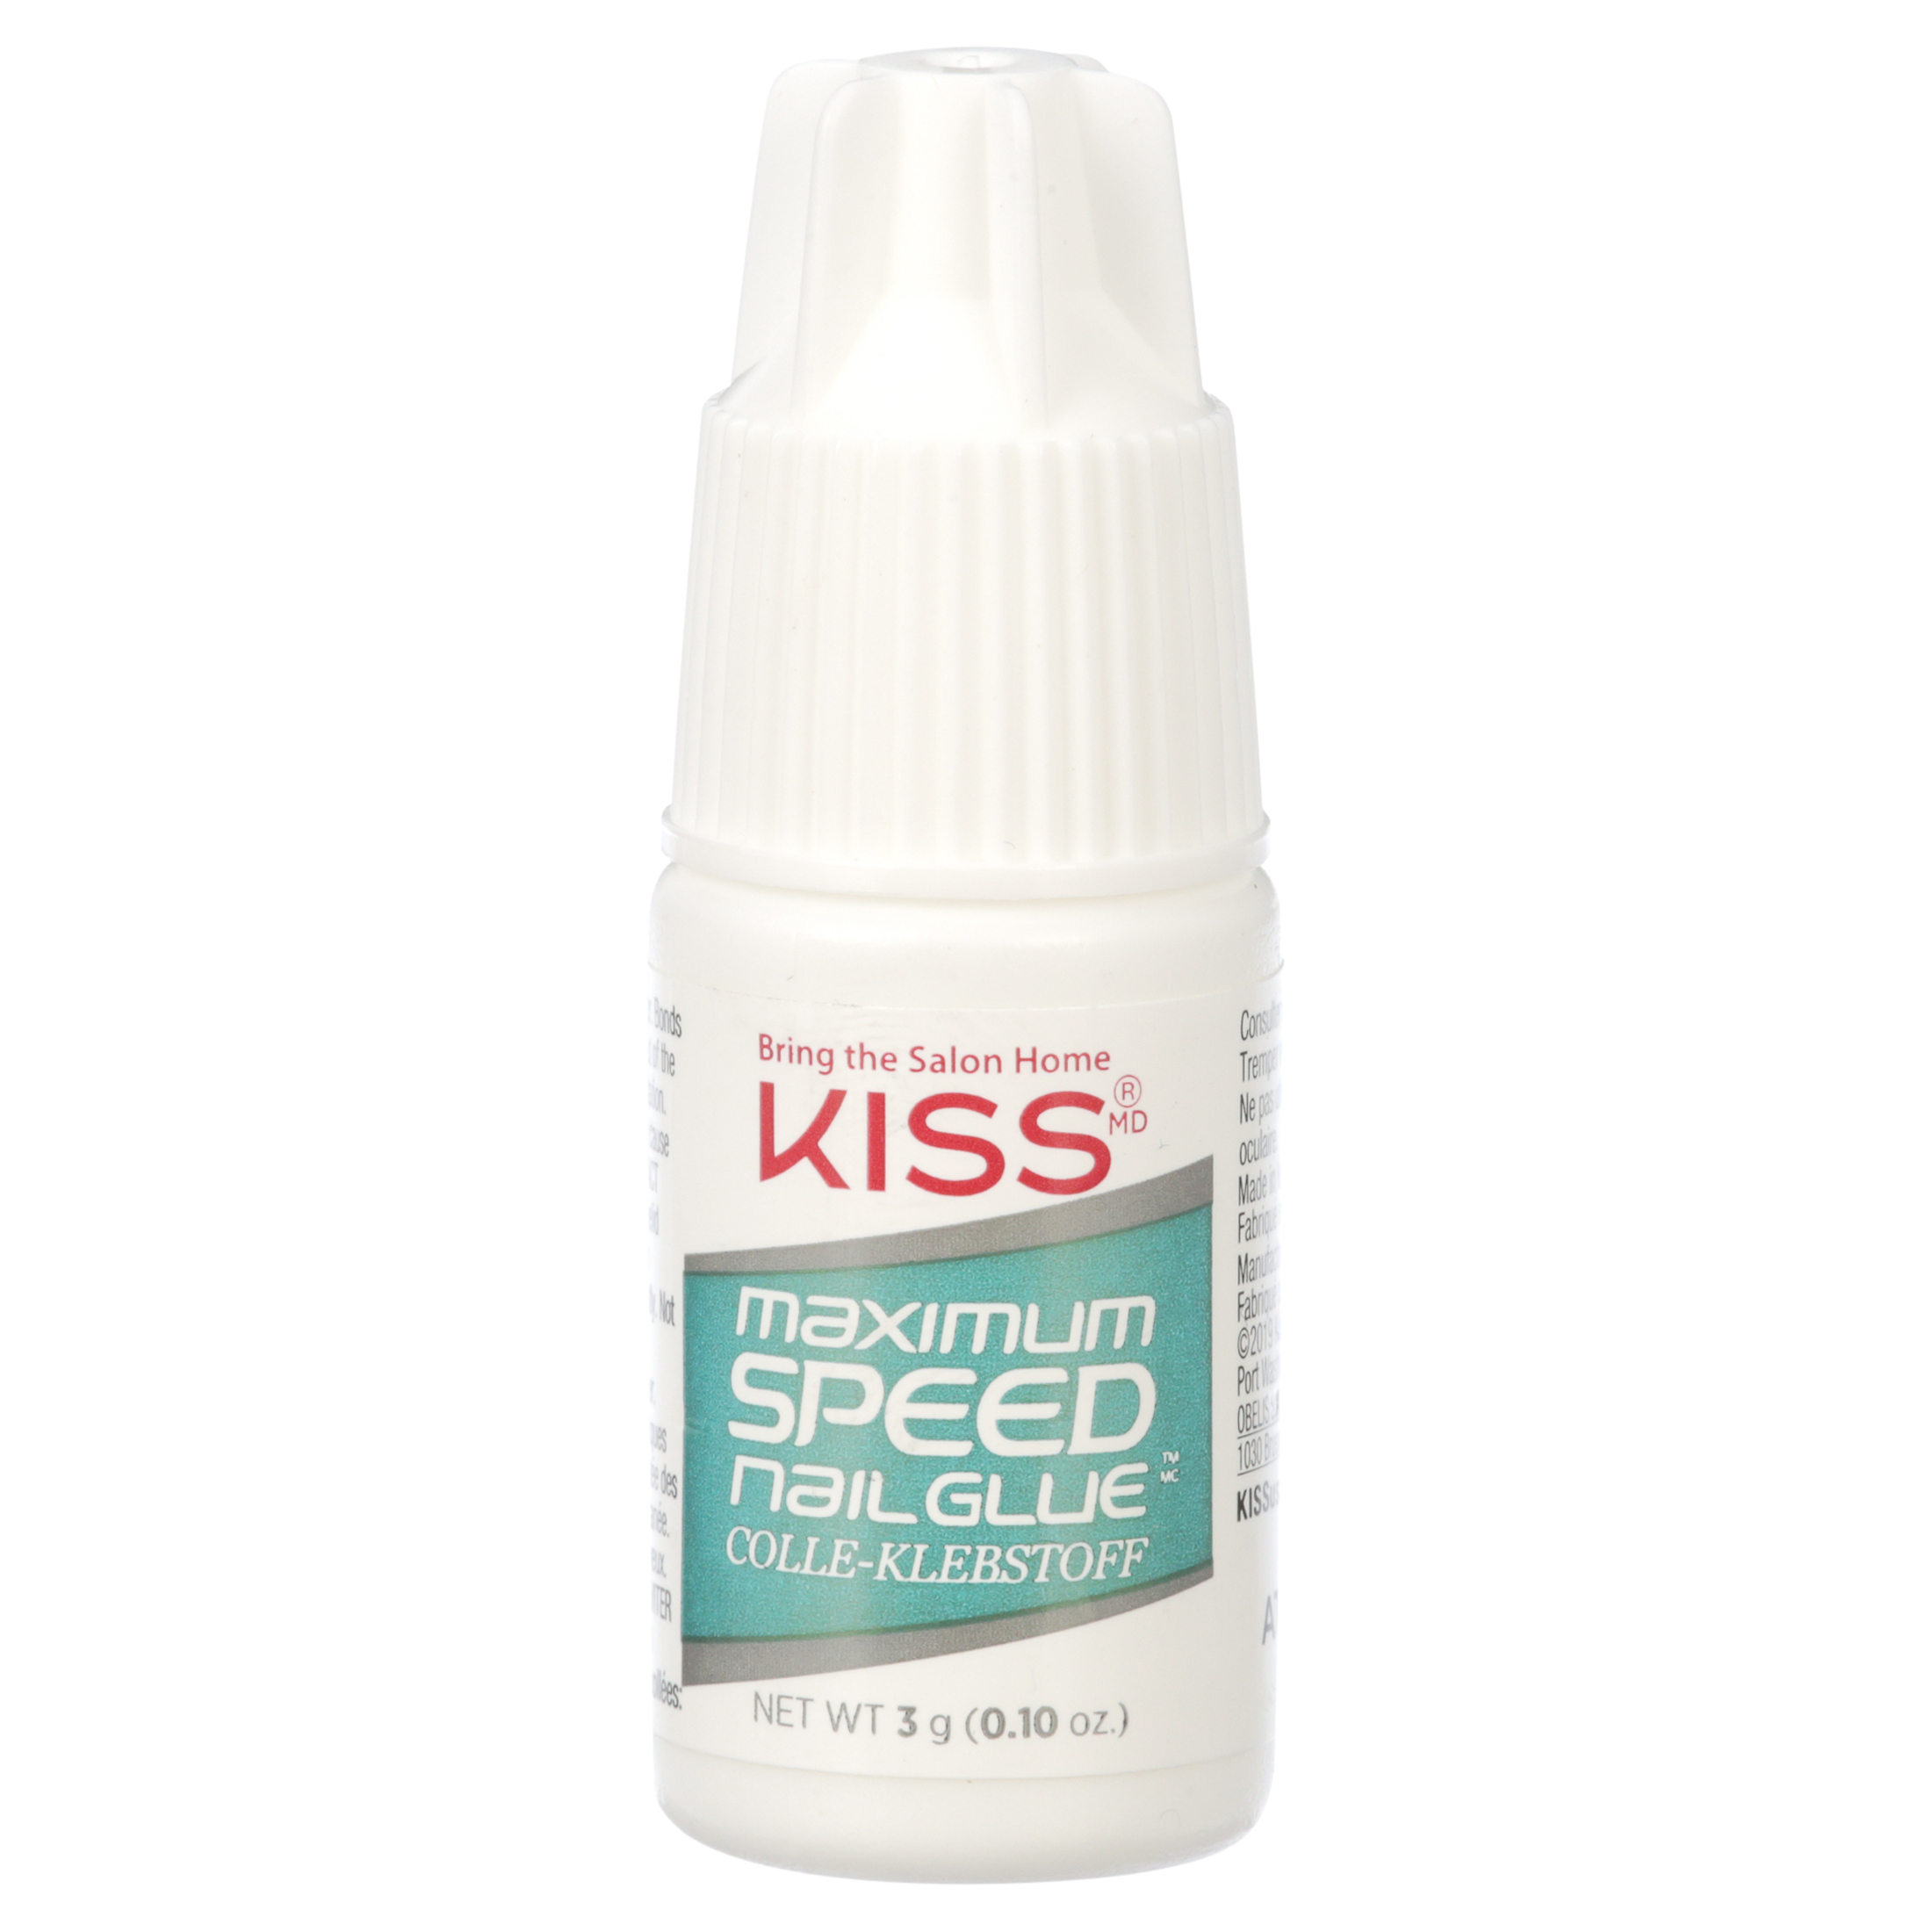 KISS 100 Tips - Curve Overlap - Walmart.com